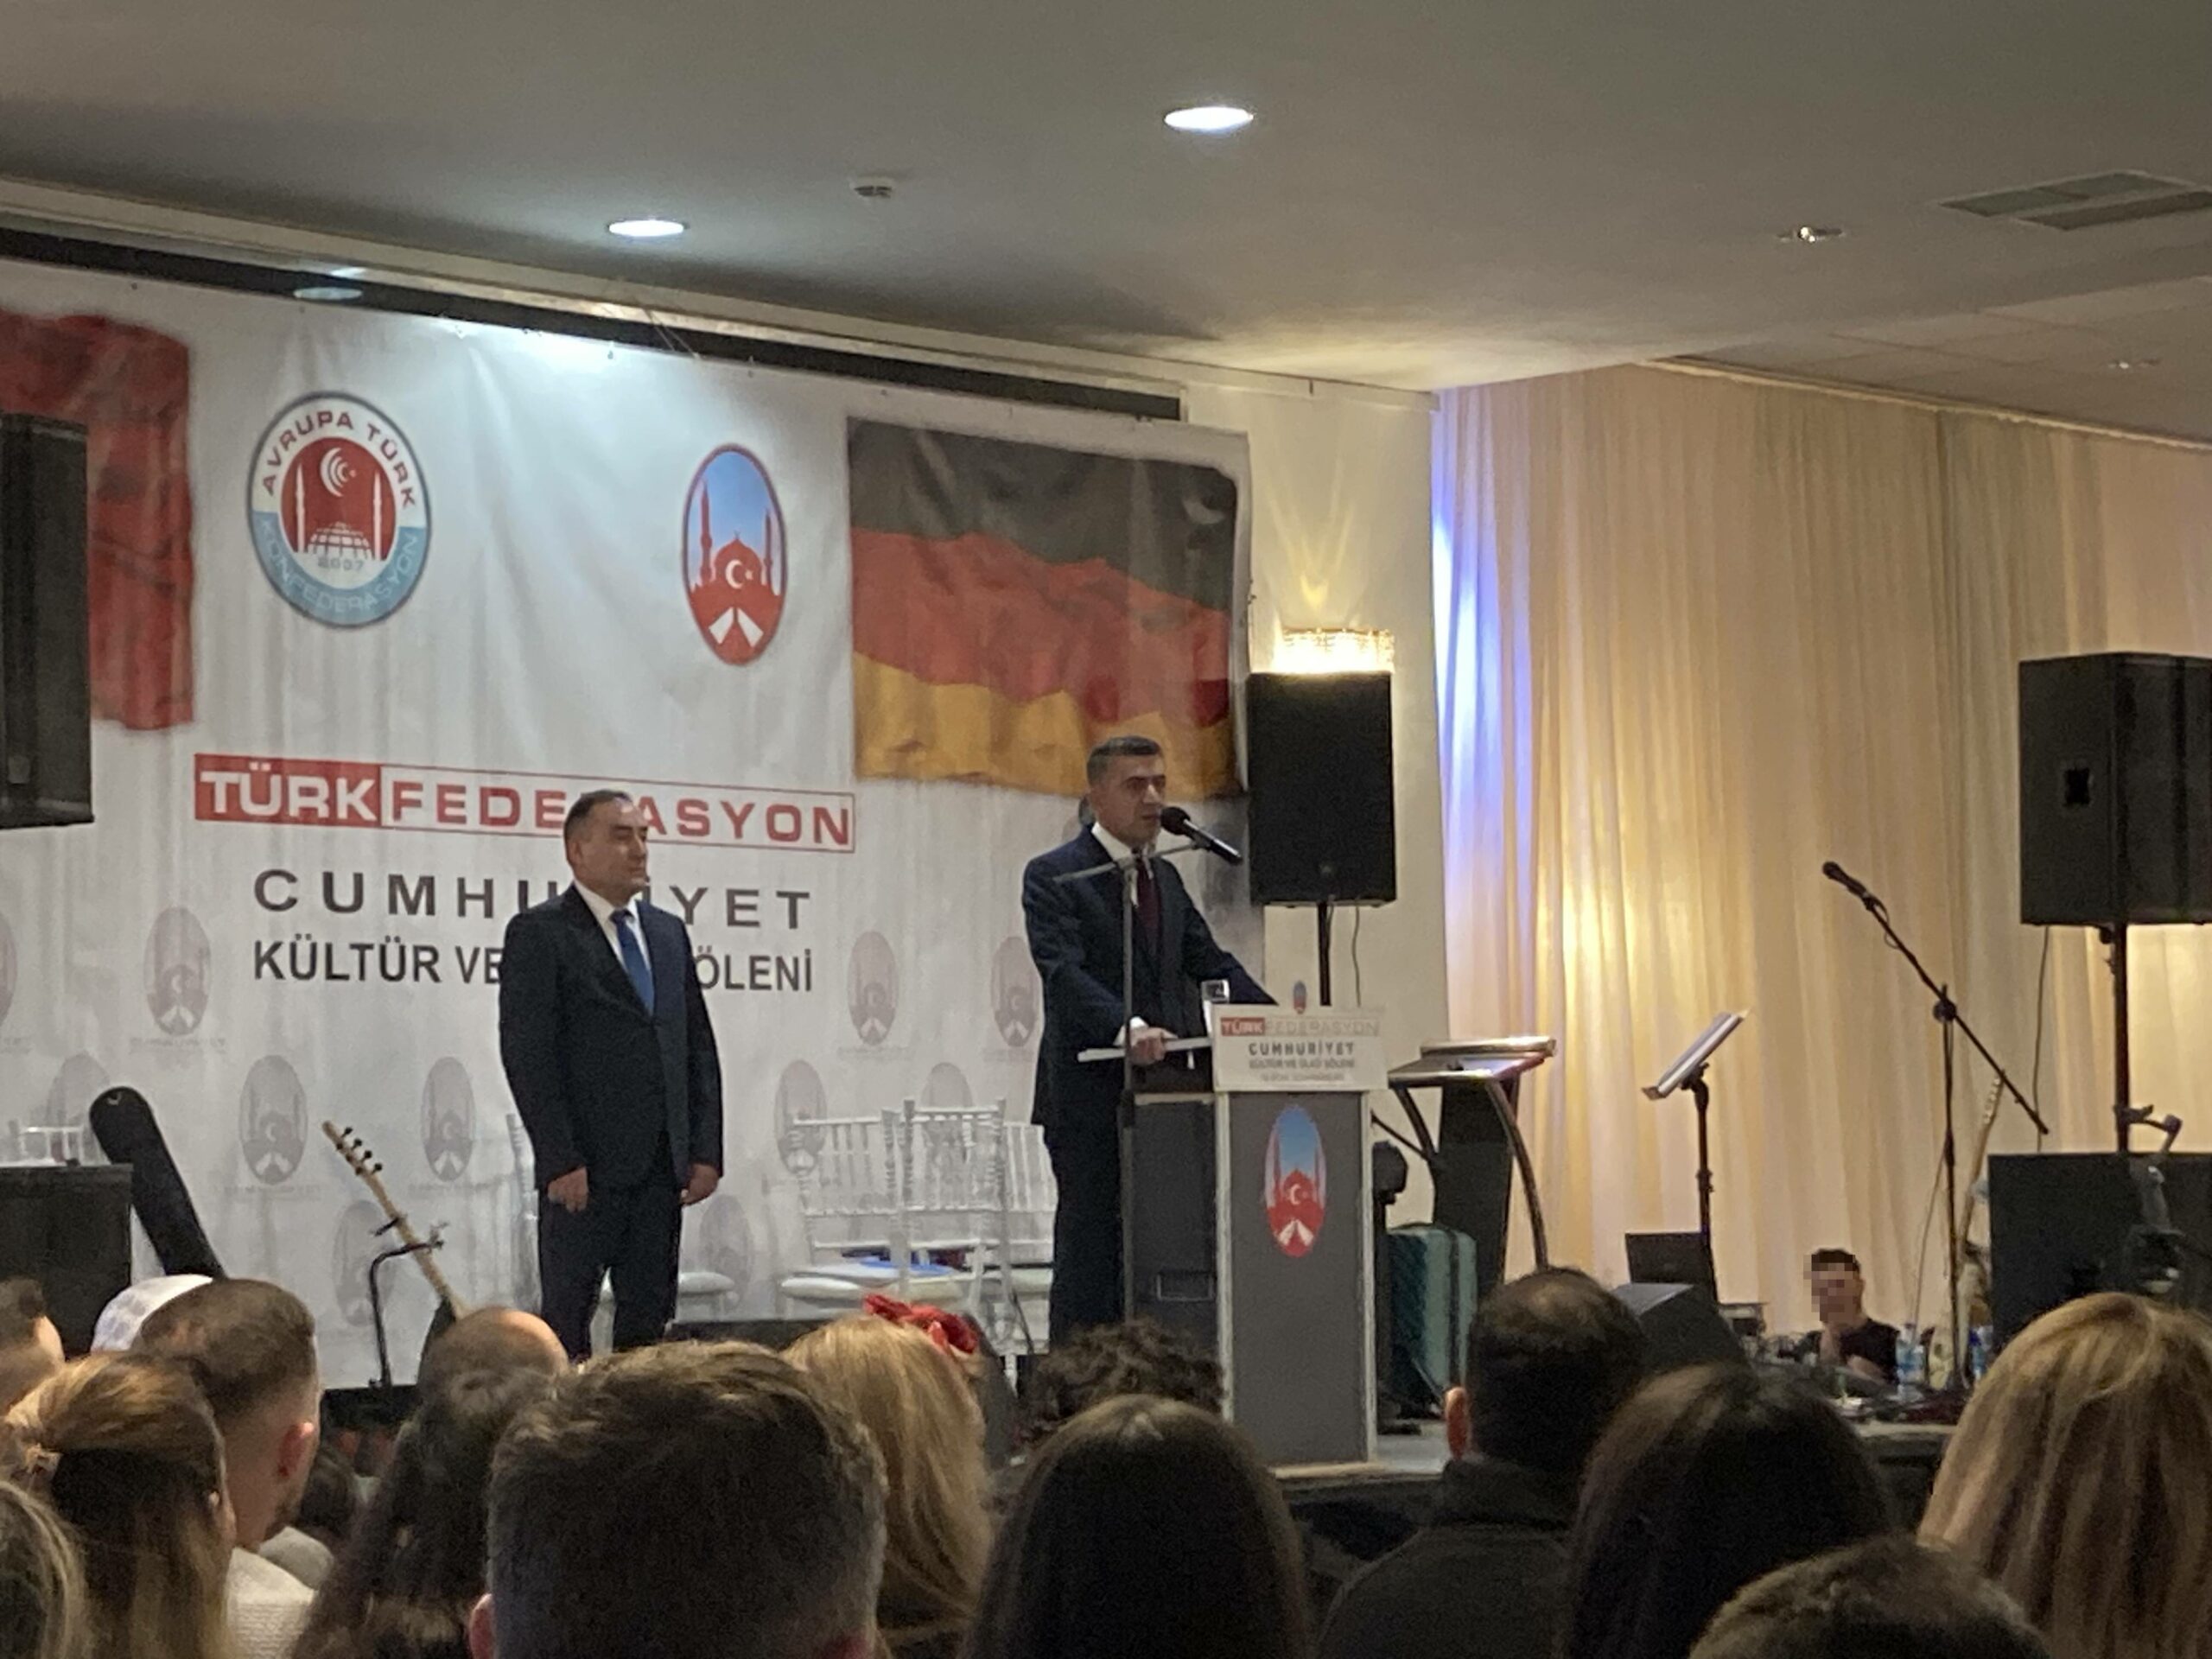 ADÜTDF-Präsident Şentürk Doğruyol spricht zu den Anwesenden.